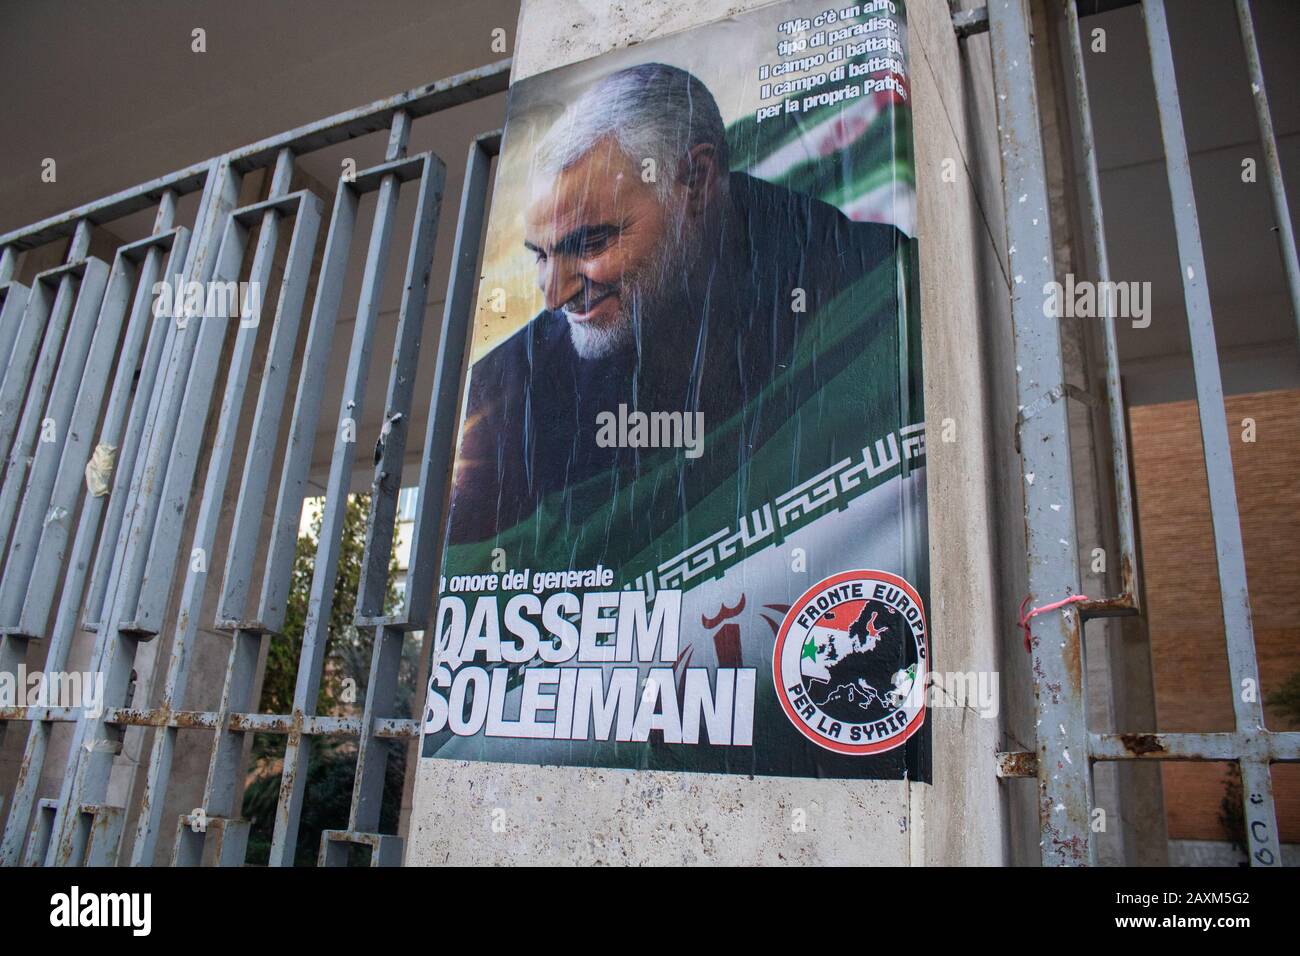 Rome, Italie - 12 février 2020: Une affiche honorant le général iranien Qassem Soleimani, qui dirigeait la Force des Quds du corps des gardiens de la révolution islamique, et qui fut tué par une frappe militaire américaine en Irak le 3 janvier 2020. La mort de Qassem Soleimani a soulevé des tensions entre l'Amérique et l'Iran qui avaient juré de venger sa mort. Amer ghazzal/Alay Live News Banque D'Images